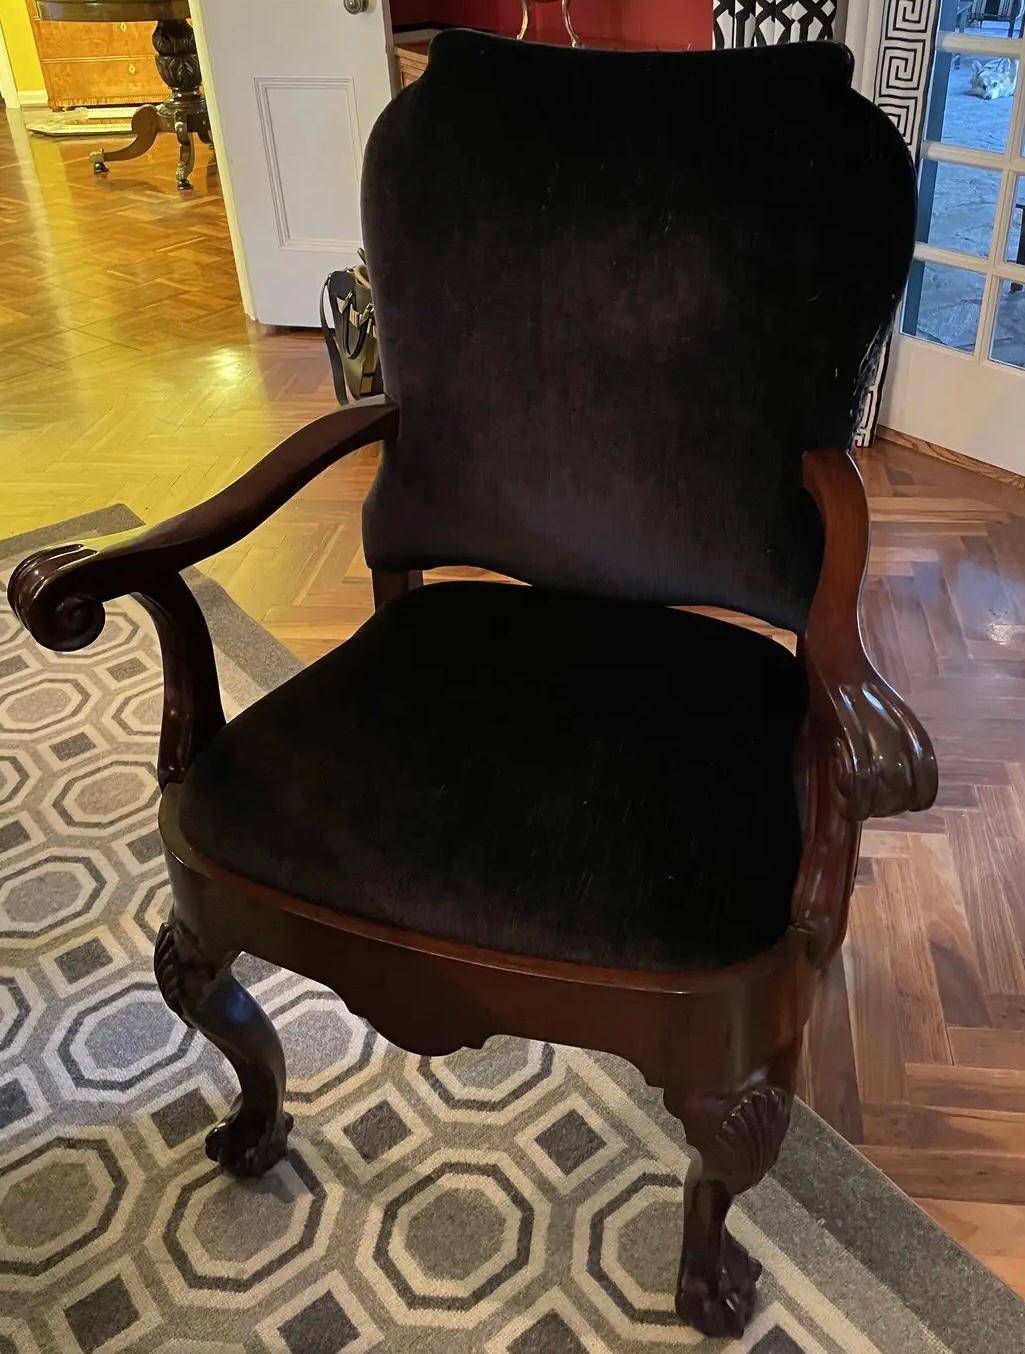 Ensemble de 12 chaises de salle à manger Mary McDonald de style Chippendale en acajou et mohair noir. Il s'agit des véritables chaises présentées dans le livre Interiors de Mary McDonald. L'ensemble comprend 2 fauteuils et 10 chaises d'appoint.